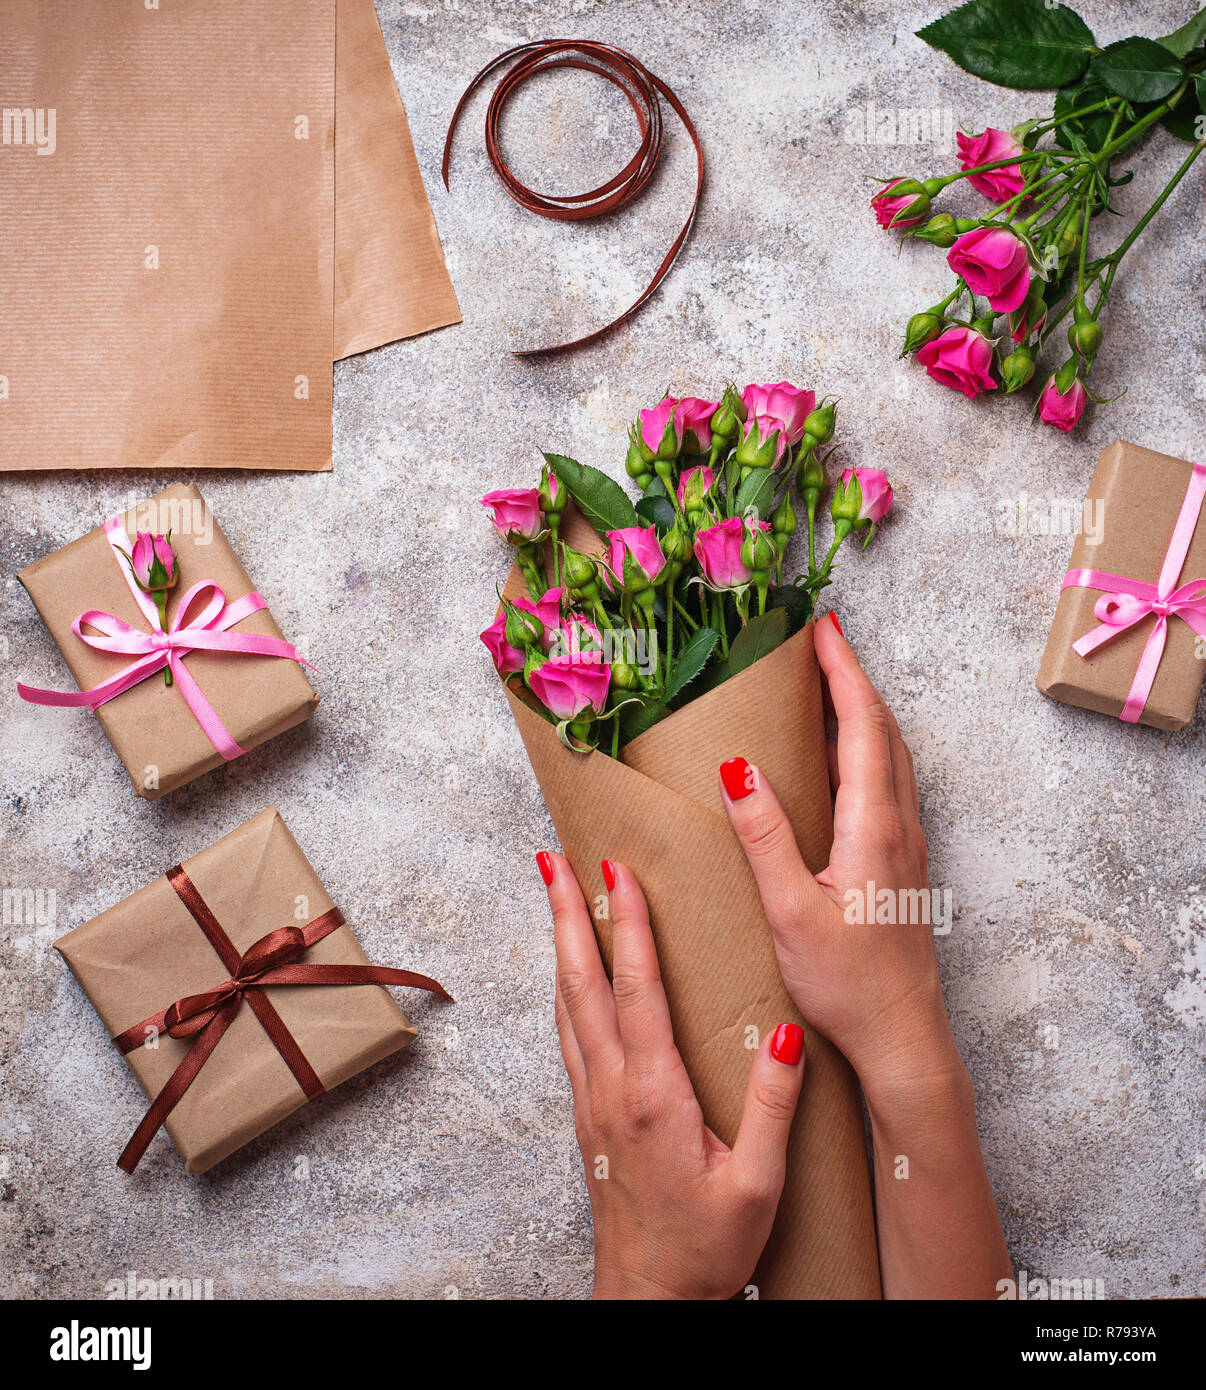 Frauen Hände wickeln Sie einen Blumenstrauß aus Rosen in Papier  Stockfotografie - Alamy